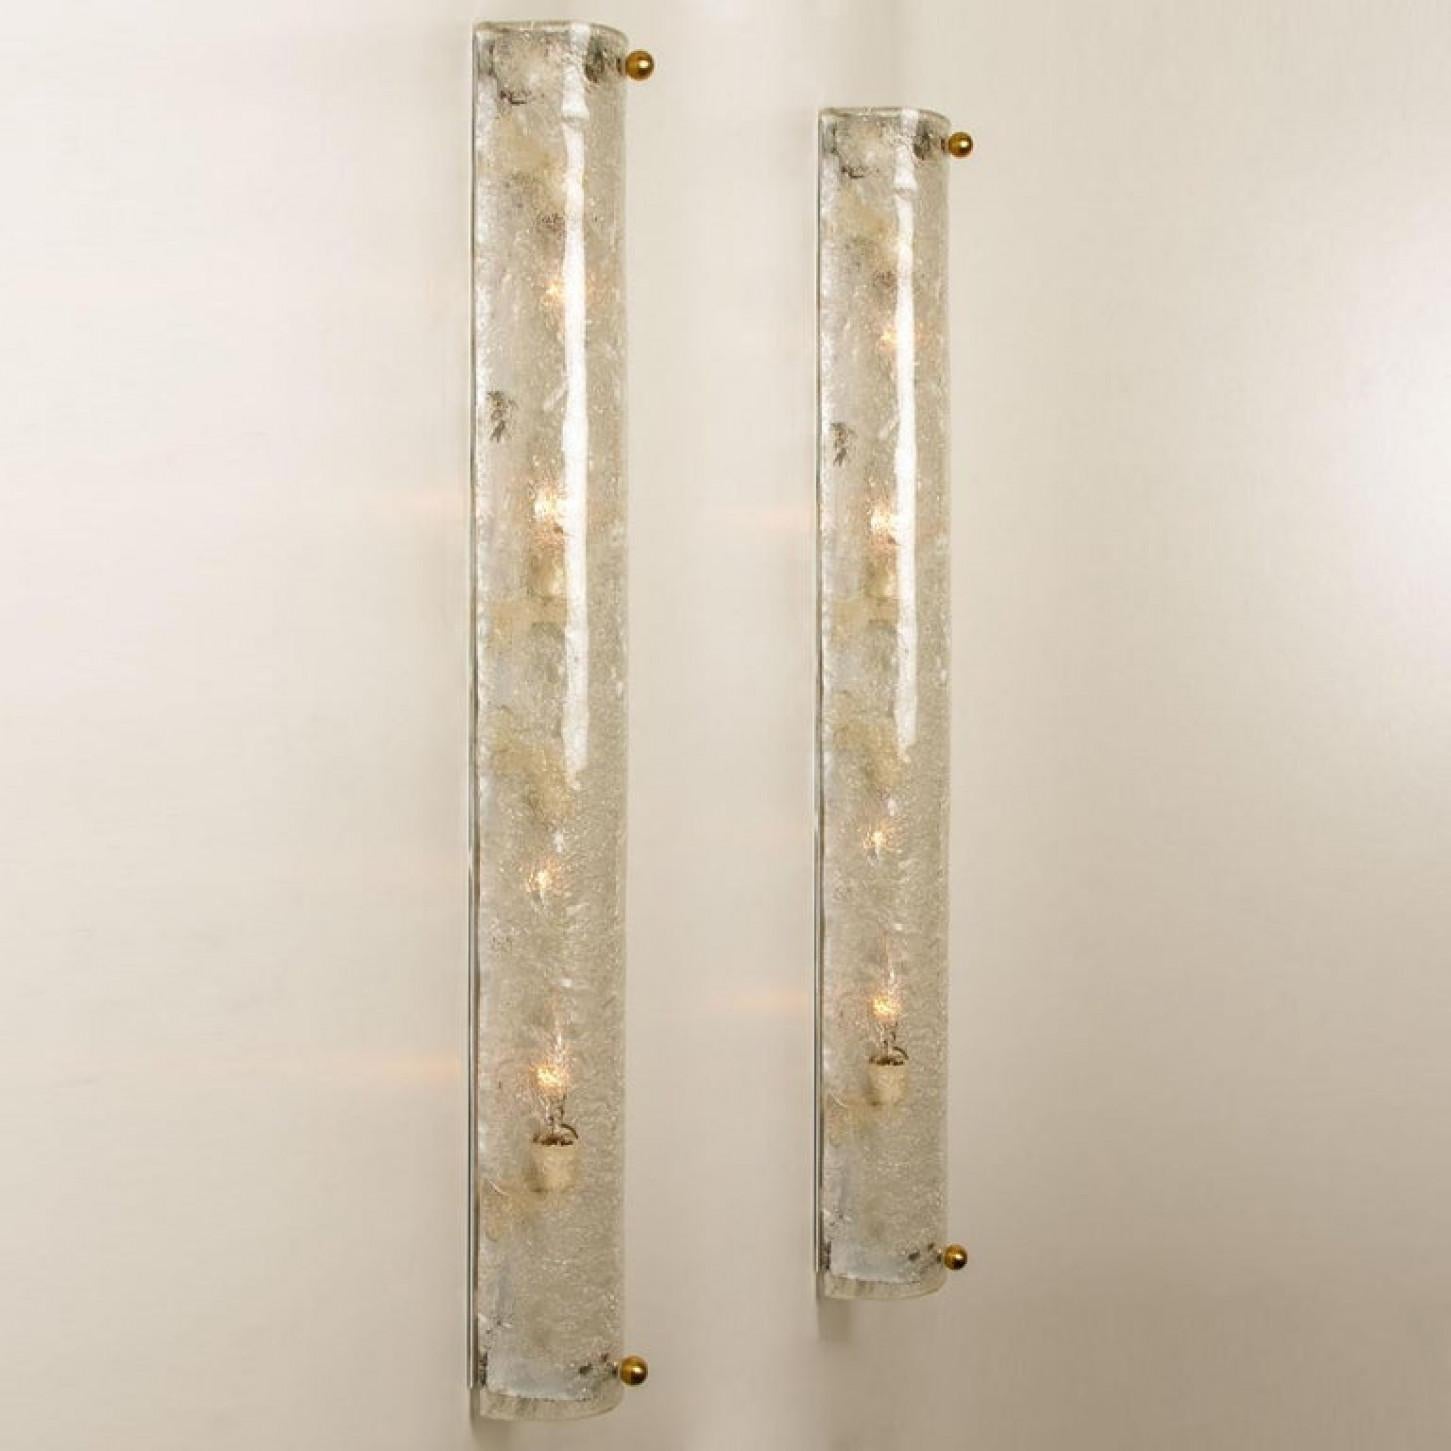 Zwei große, hochwertige Murano-Glasleuchten auf weißem Sockel von Hillebrand, Deutschland, um 1960.
Sie besteht aus einem strukturierten, kristallklaren, röhrenförmigen Schirm, der Eis simuliert, auf einem weißen Rahmen und Messingschrauben.

Das